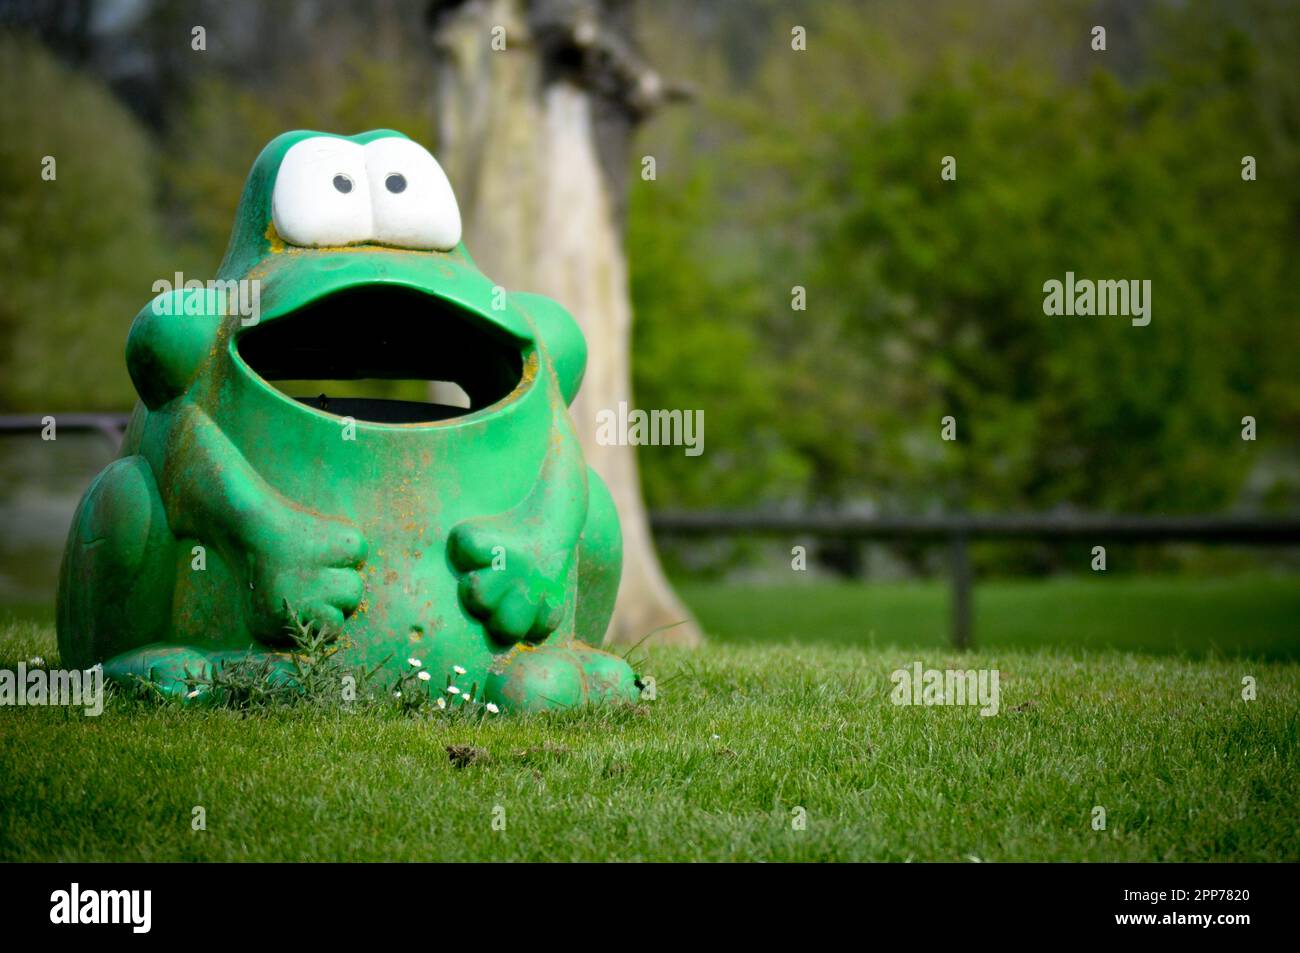 Une poubelle en plastique en forme de grenouille verte et bien abîmée dans un parc de jeux, en Angleterre Banque D'Images